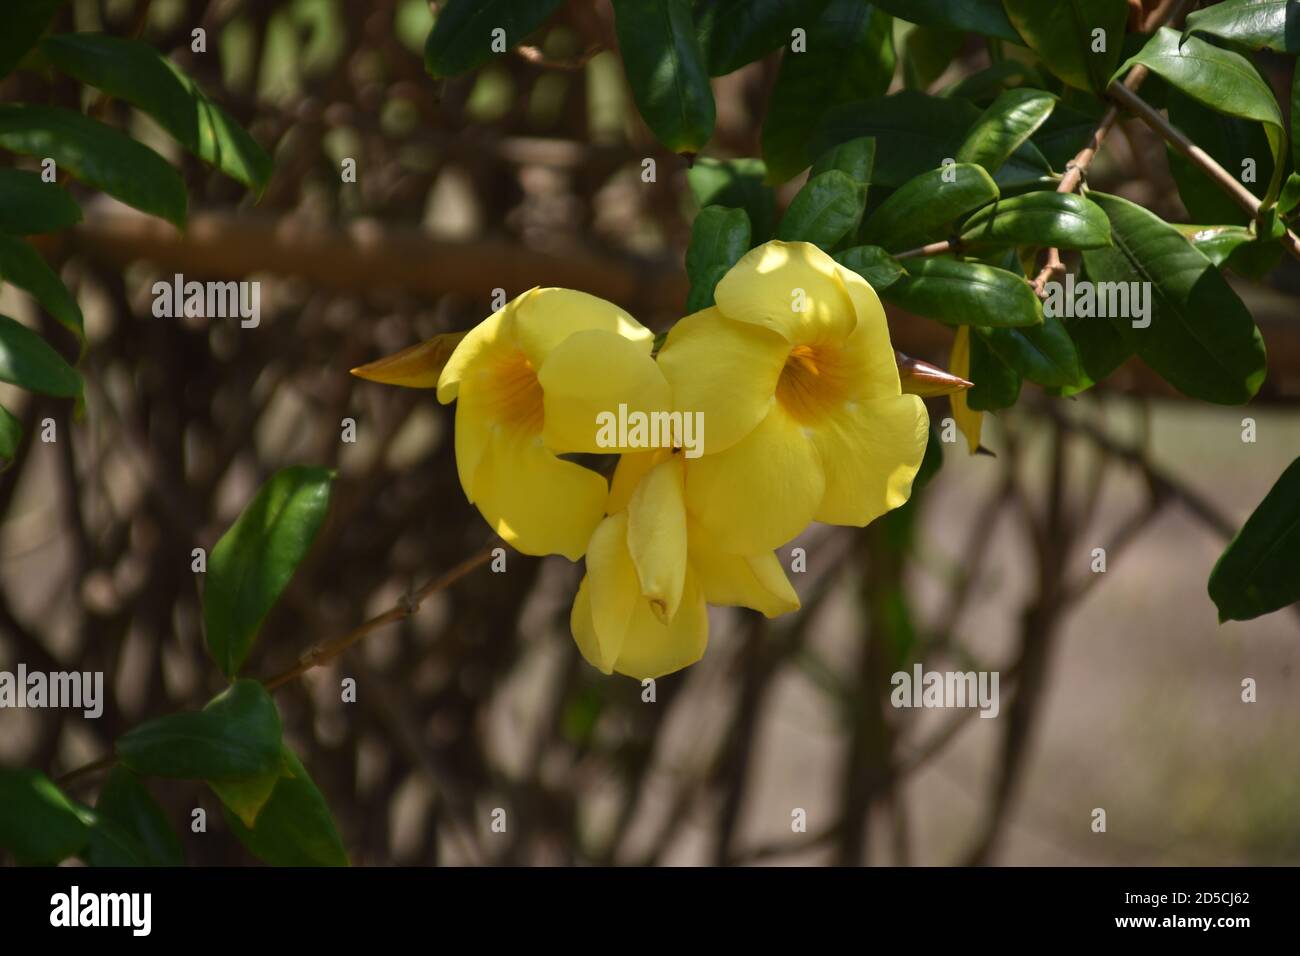 bunch of beautiful allamanda flowers Stock Photo